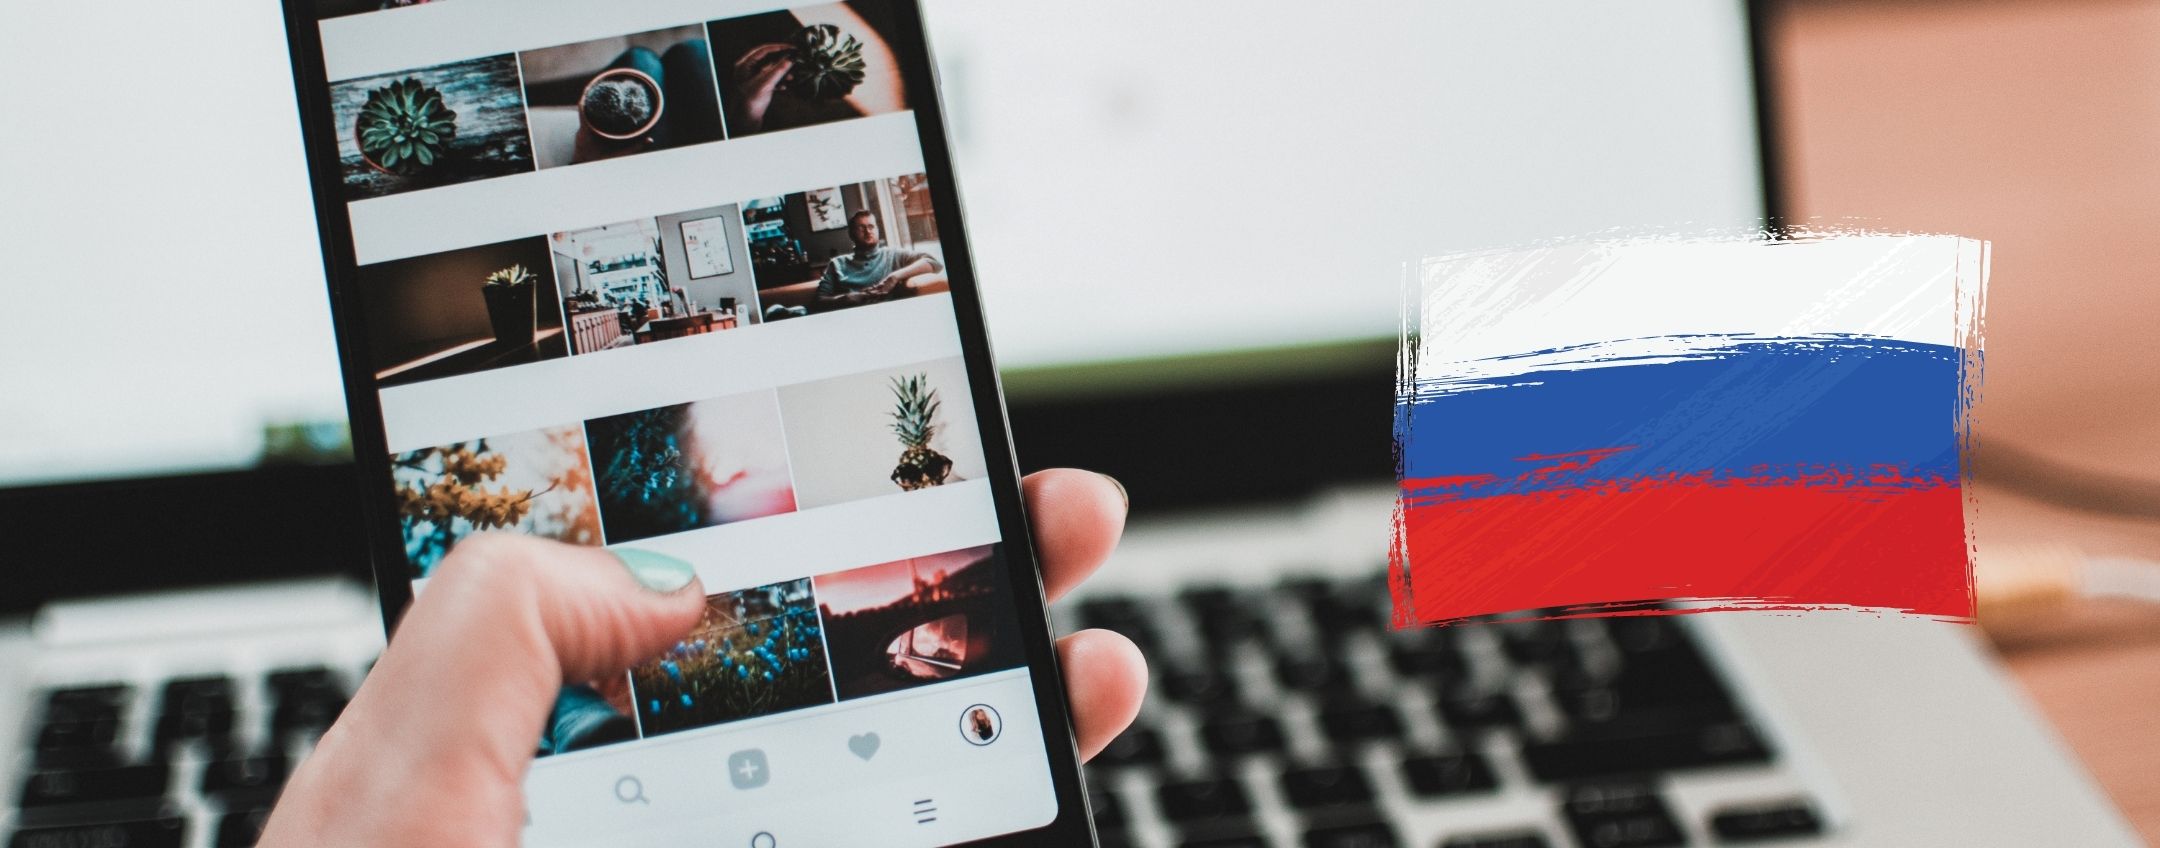 non è più possibile accedere ad Instagram in Russia